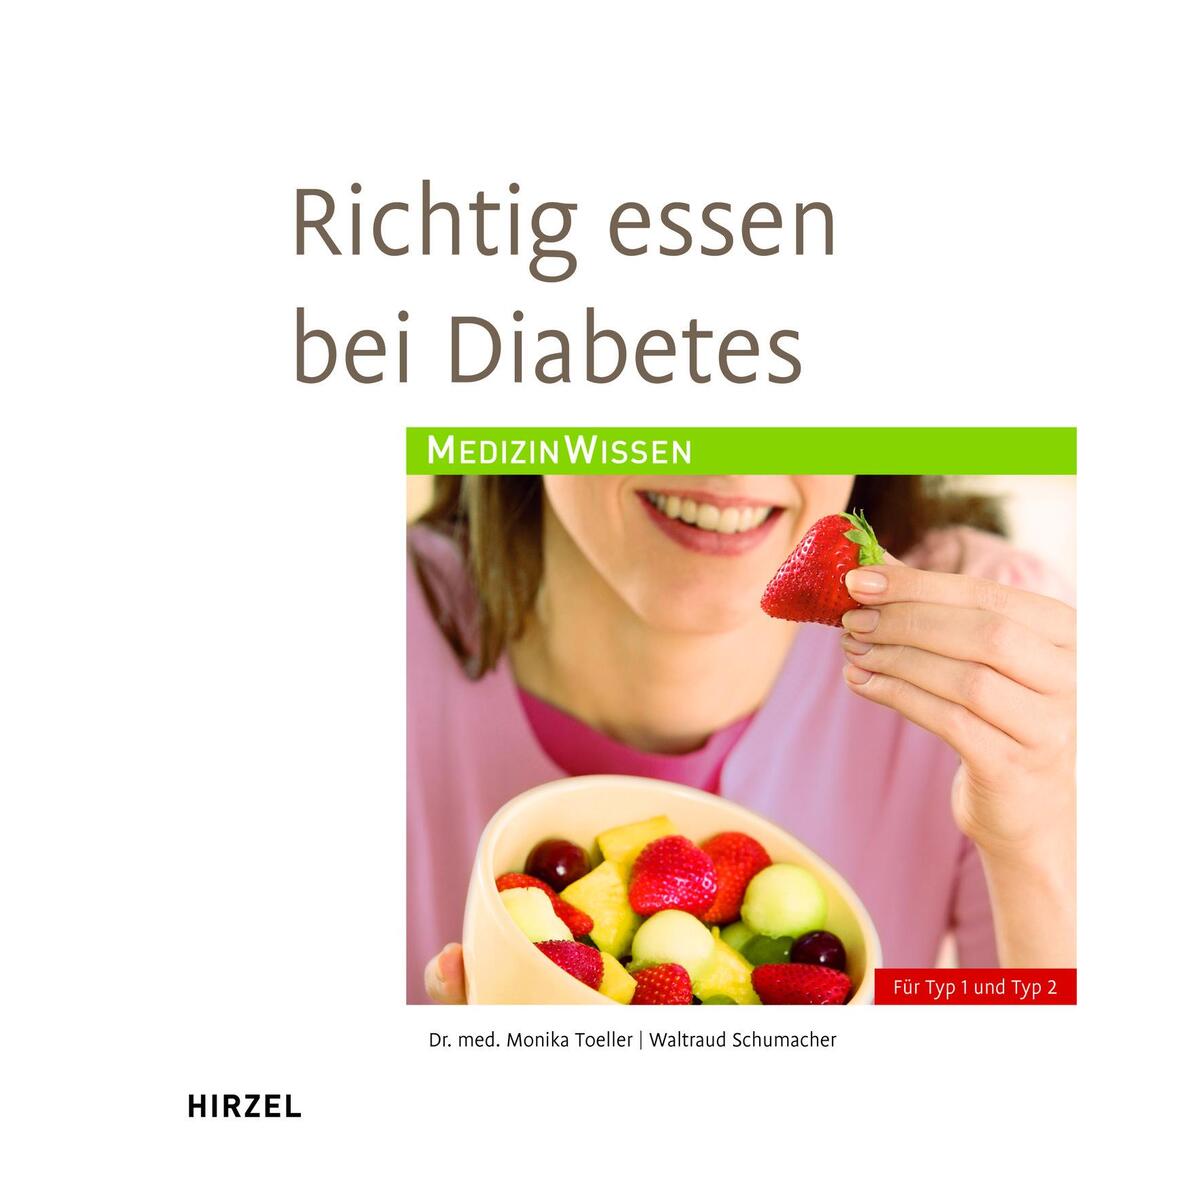 Richtig essen bei Diabetes von Hirzel S. Verlag